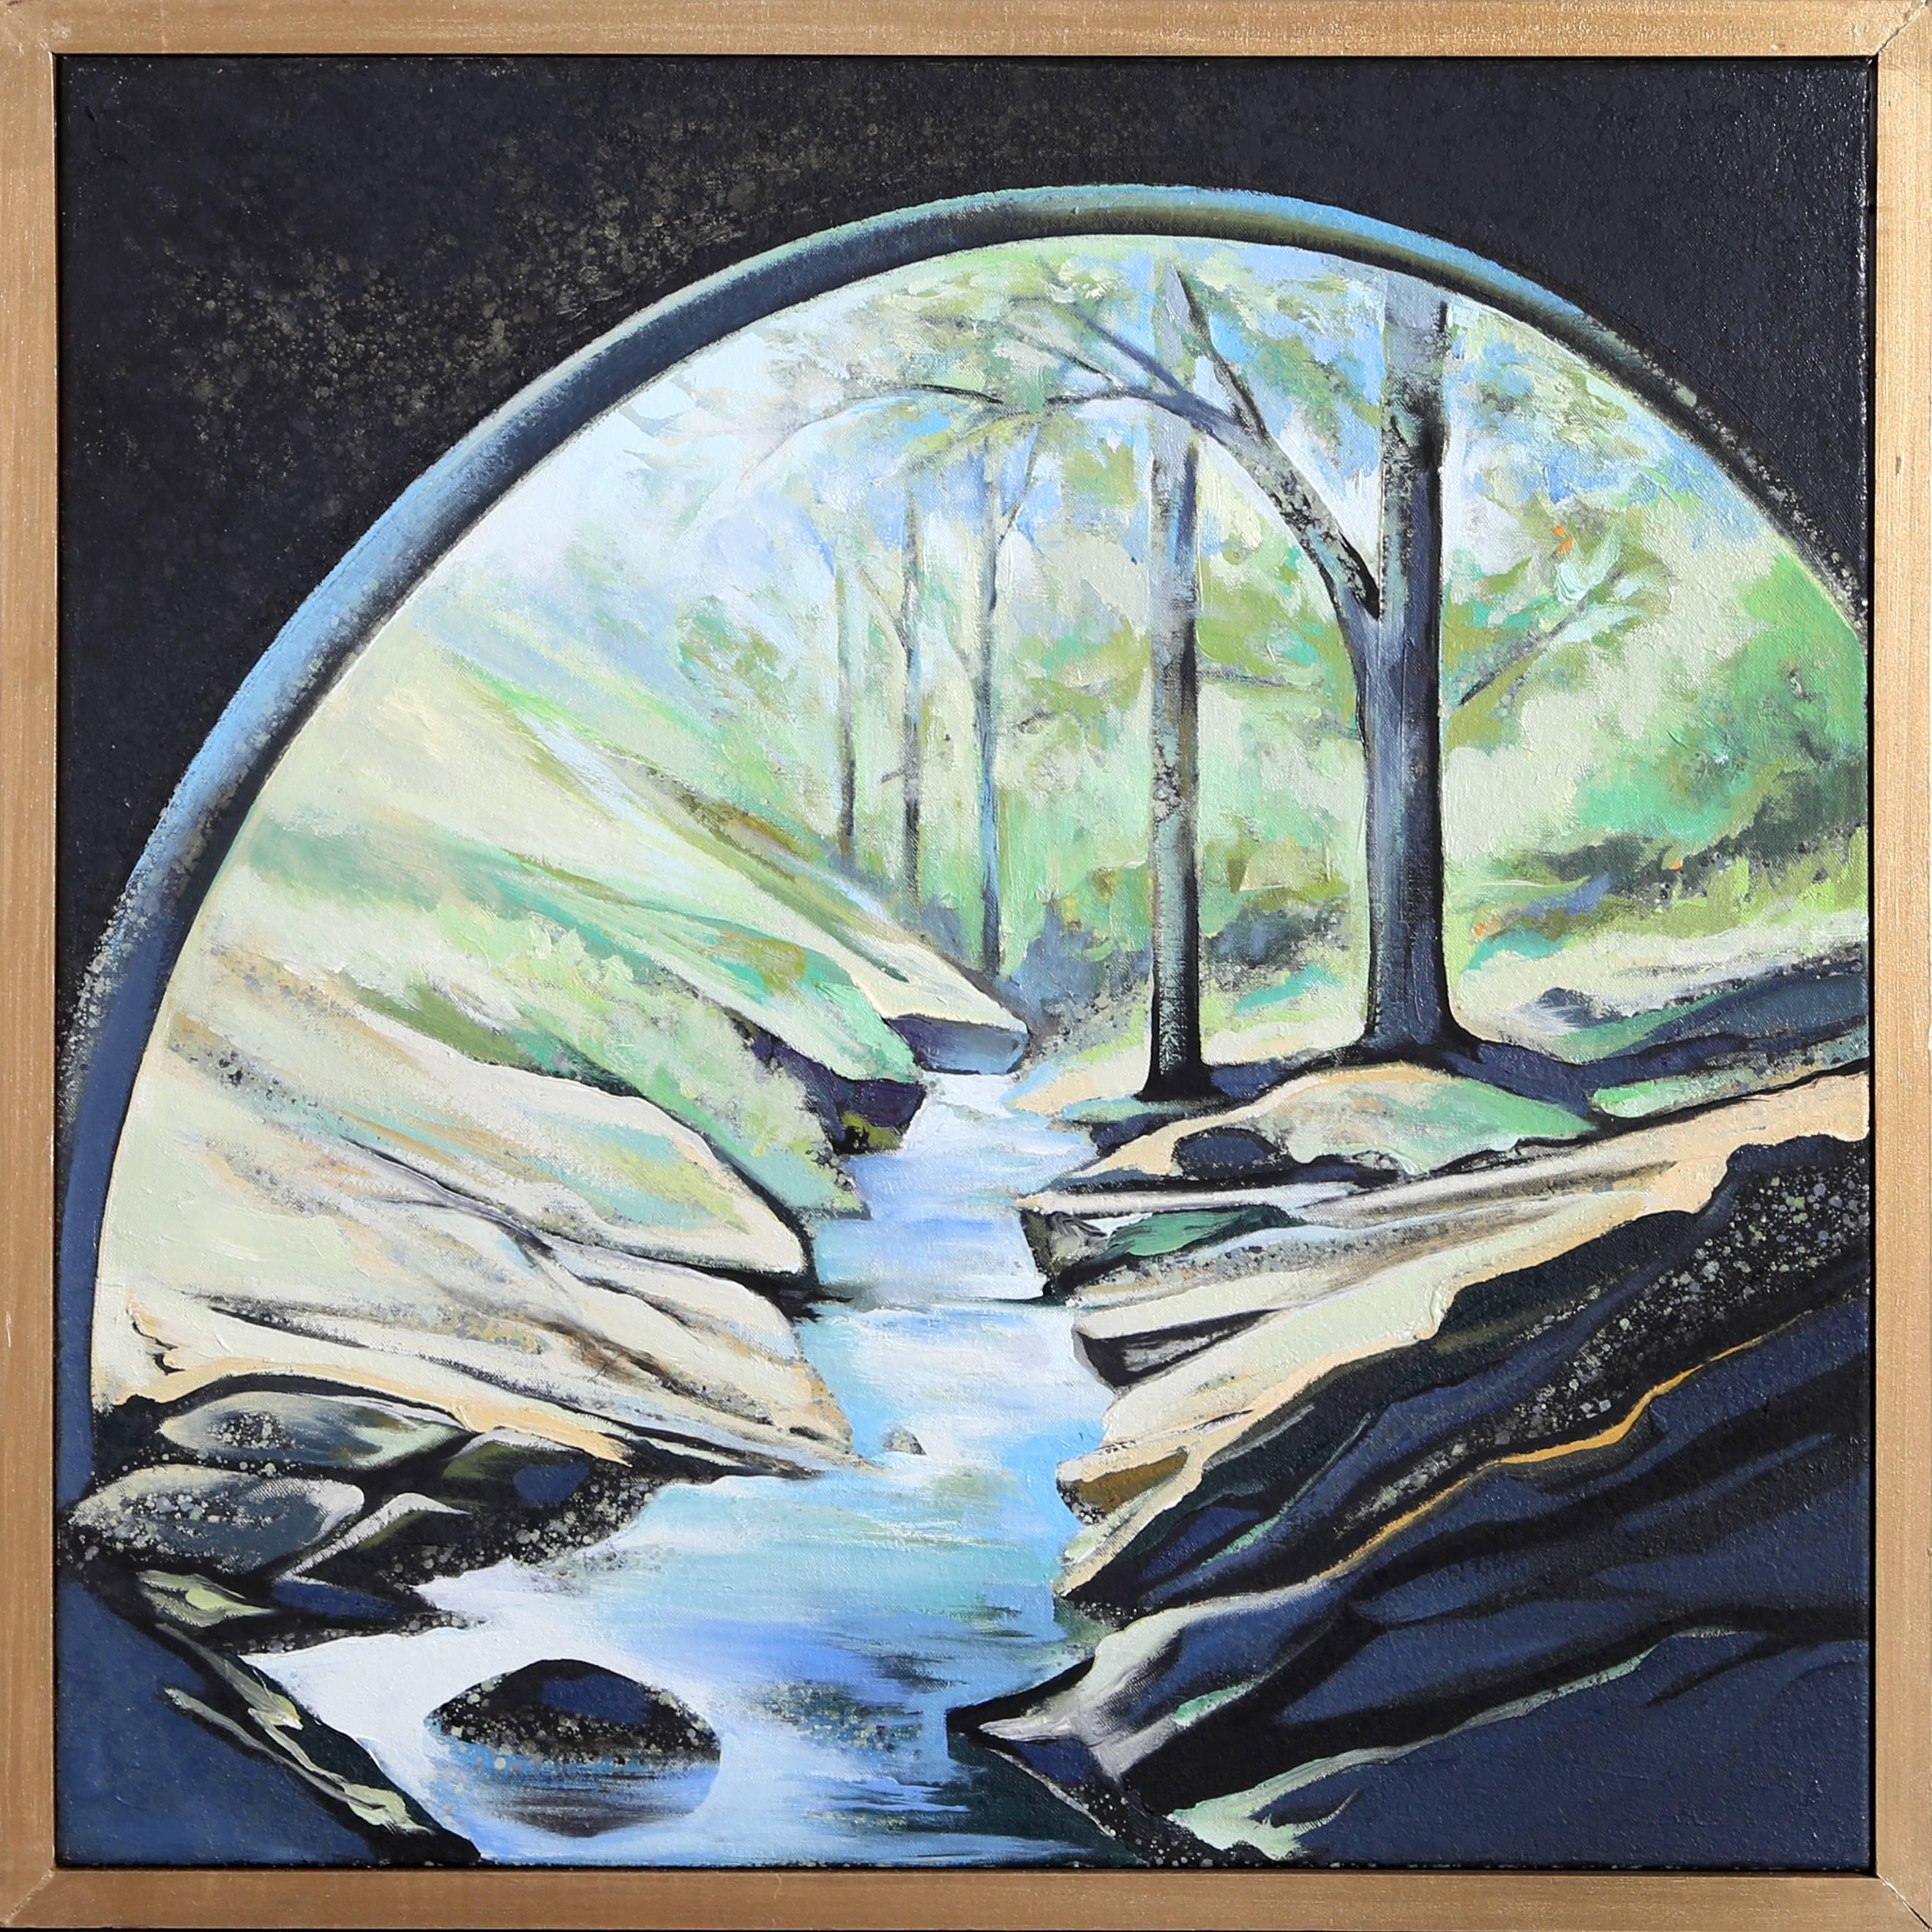 Lowell Nesbitt, "The Stream, " Oil on Canvas, 1982